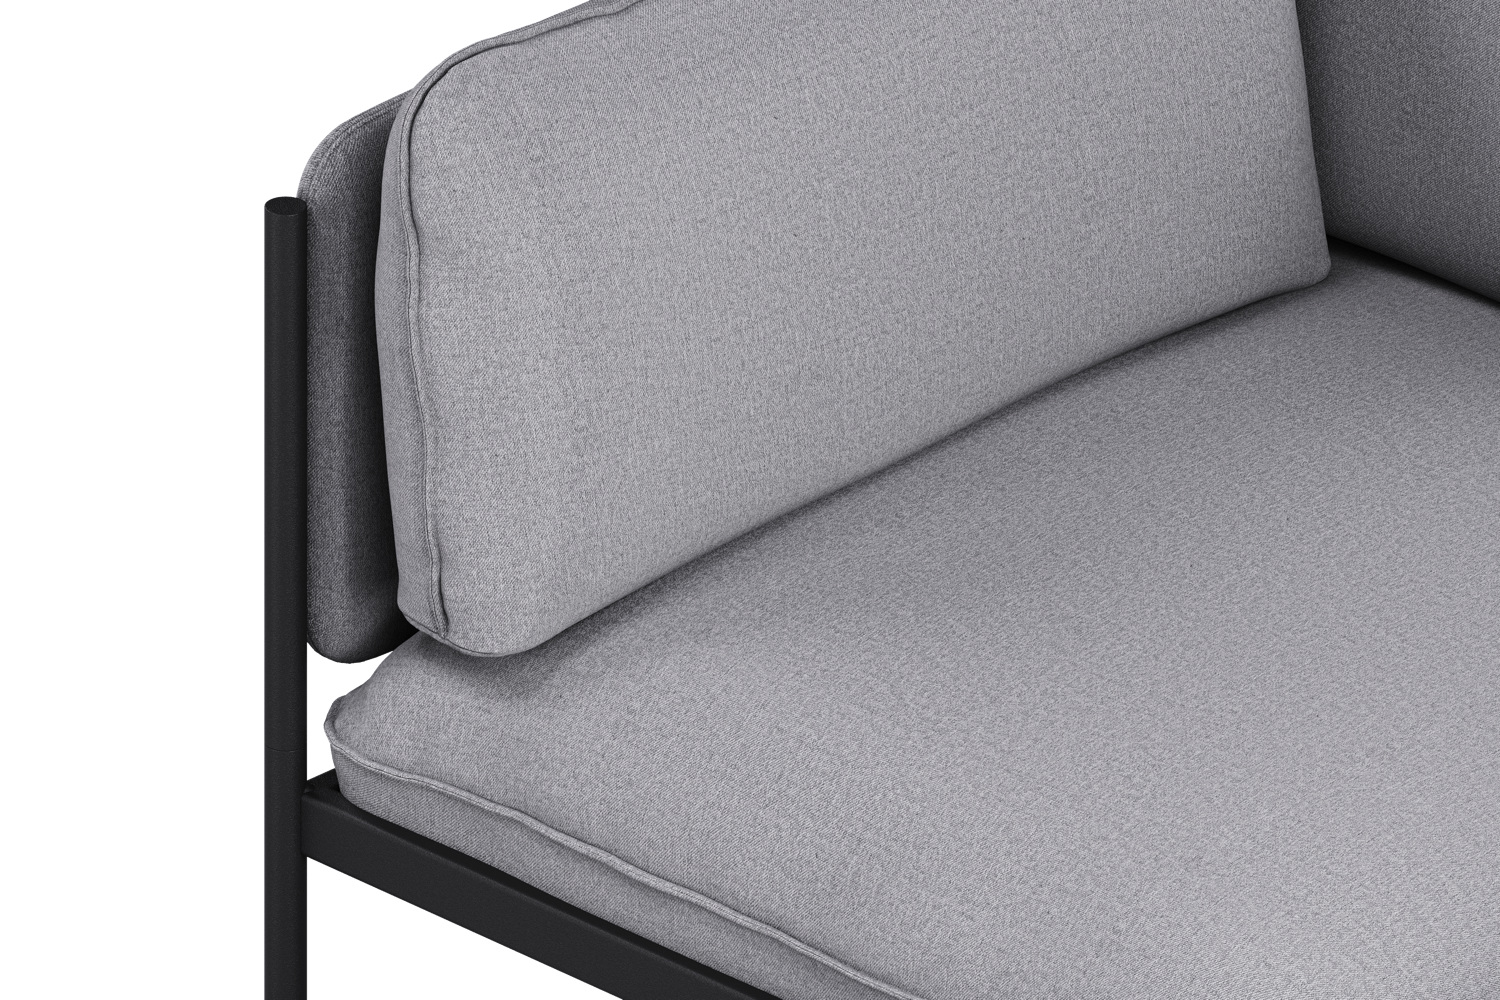 Toom Modular Sofa 4-Sitzer Konfiguration 1b in Pale Grey  präsentiert im Onlineshop von KAQTU Design AG. Ecksofa links ist von Noo.ma